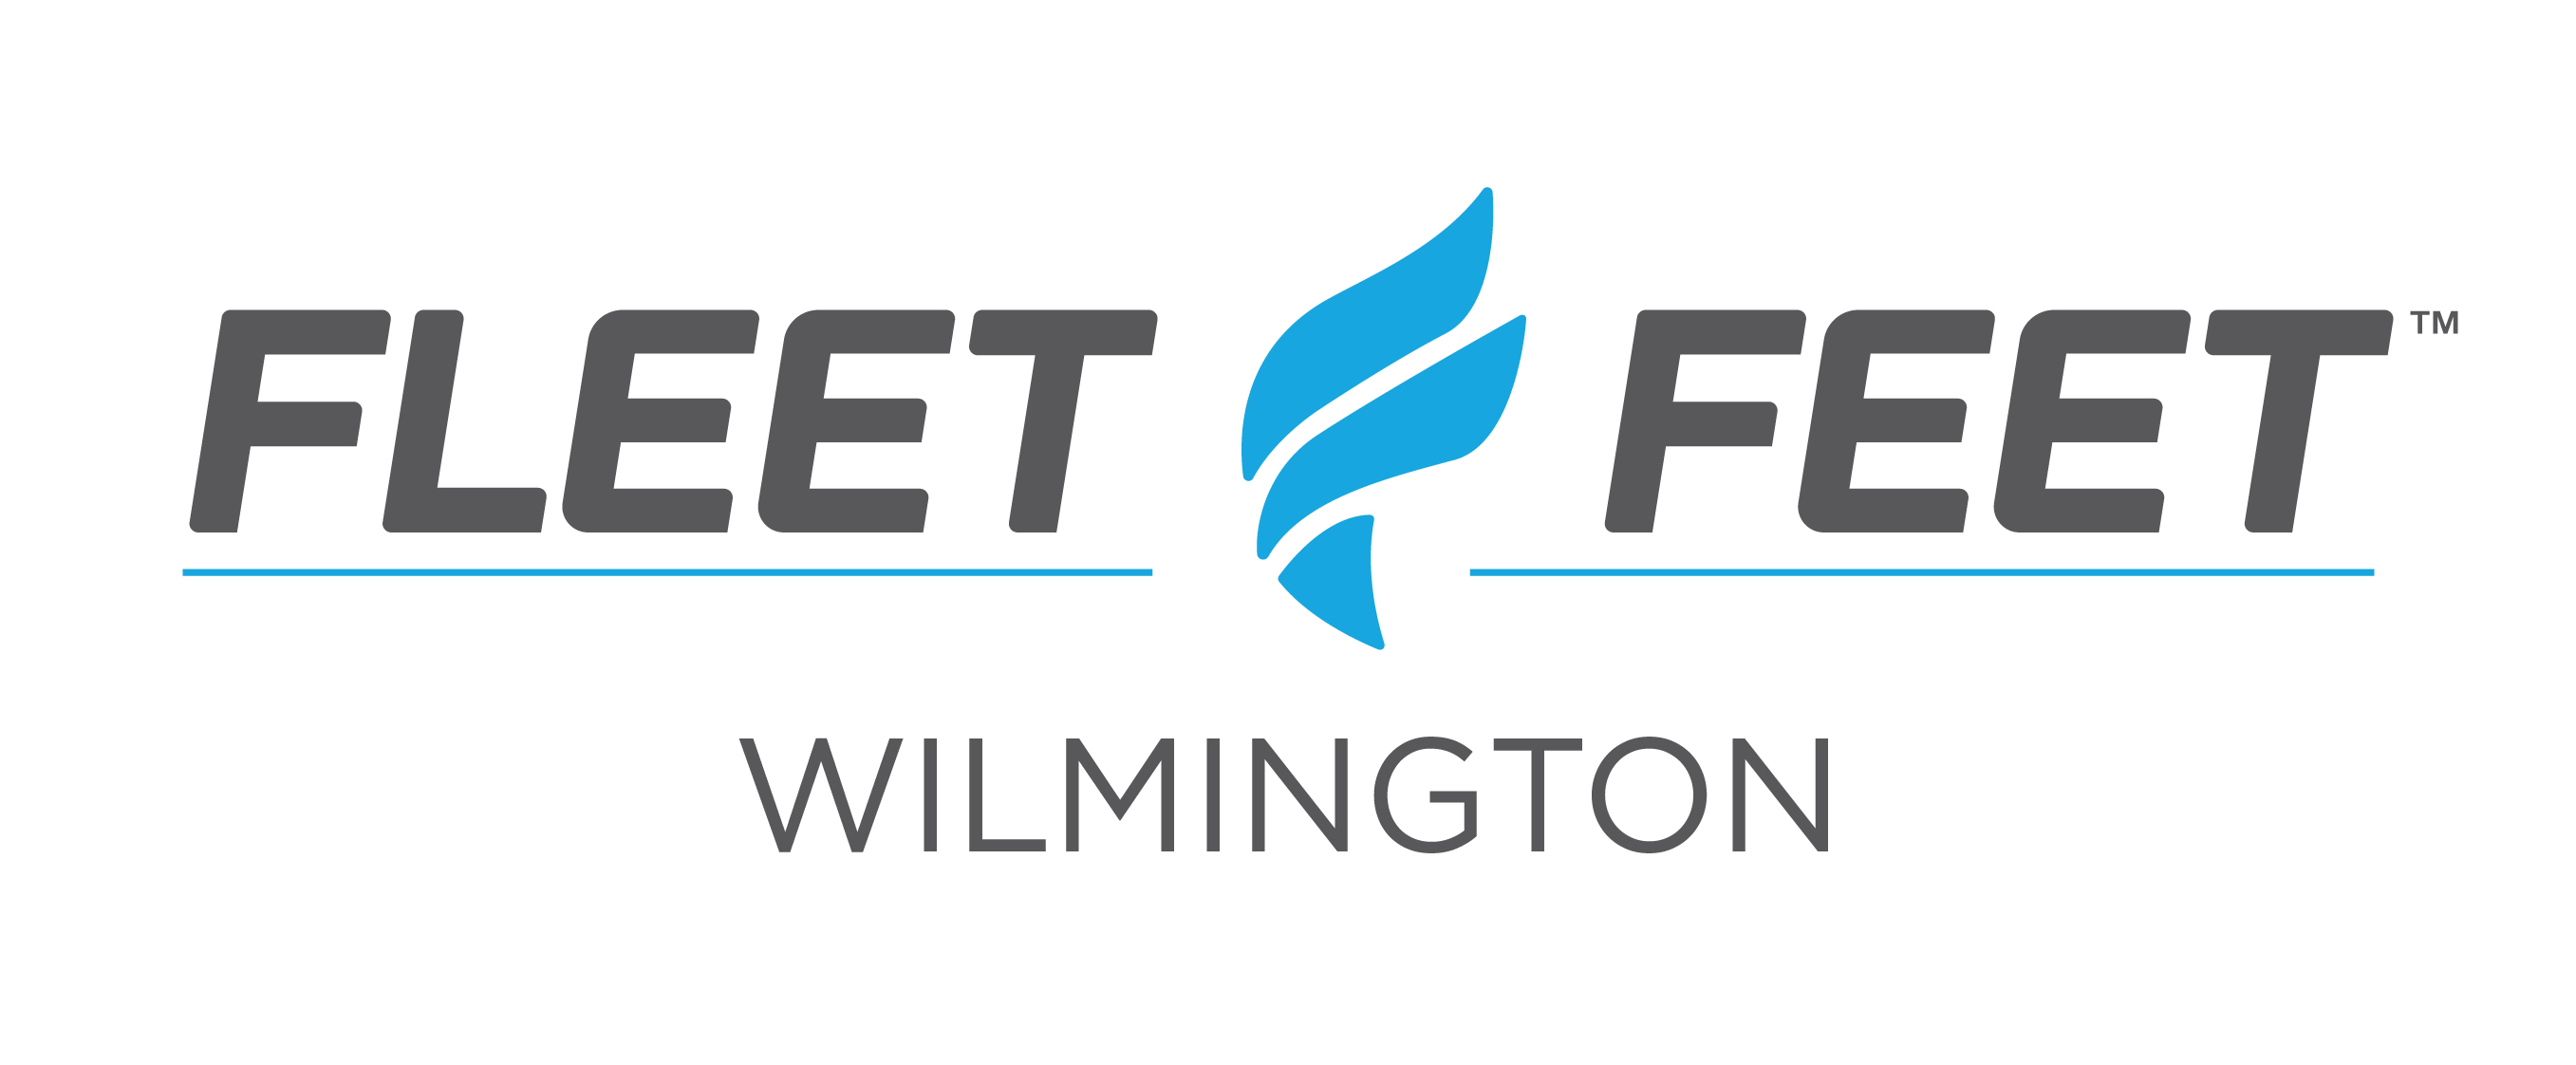 Sponsor Fleet Feet Wilmington